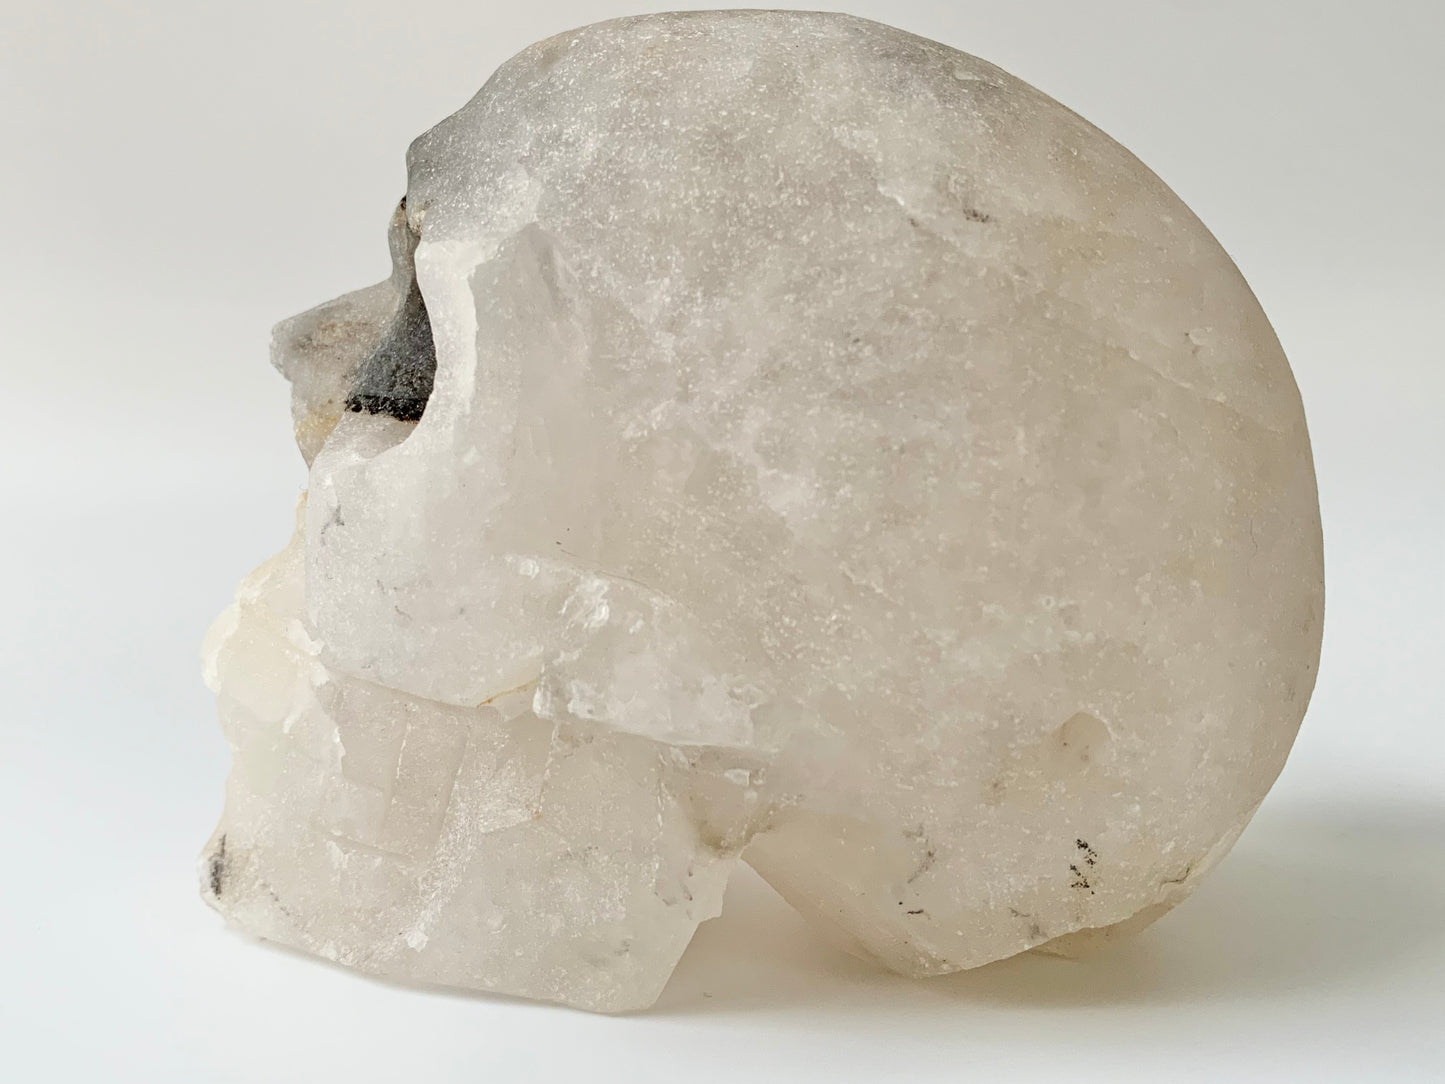 Quartz side Cluster Skull, iron staining and black eye